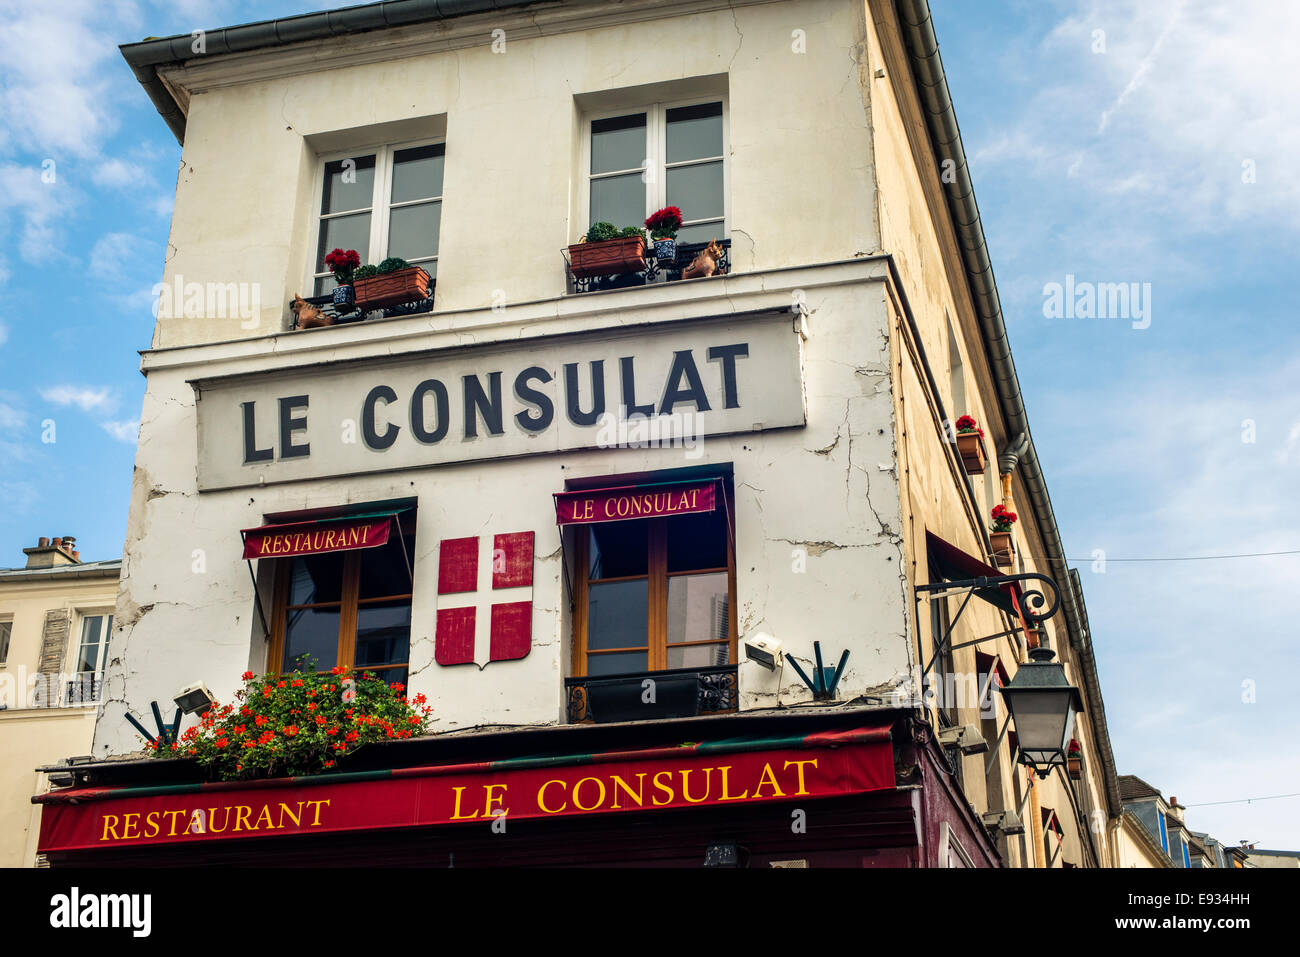 Le Consulat dans le restaurant Montmartre, Paris, France Banque D'Images